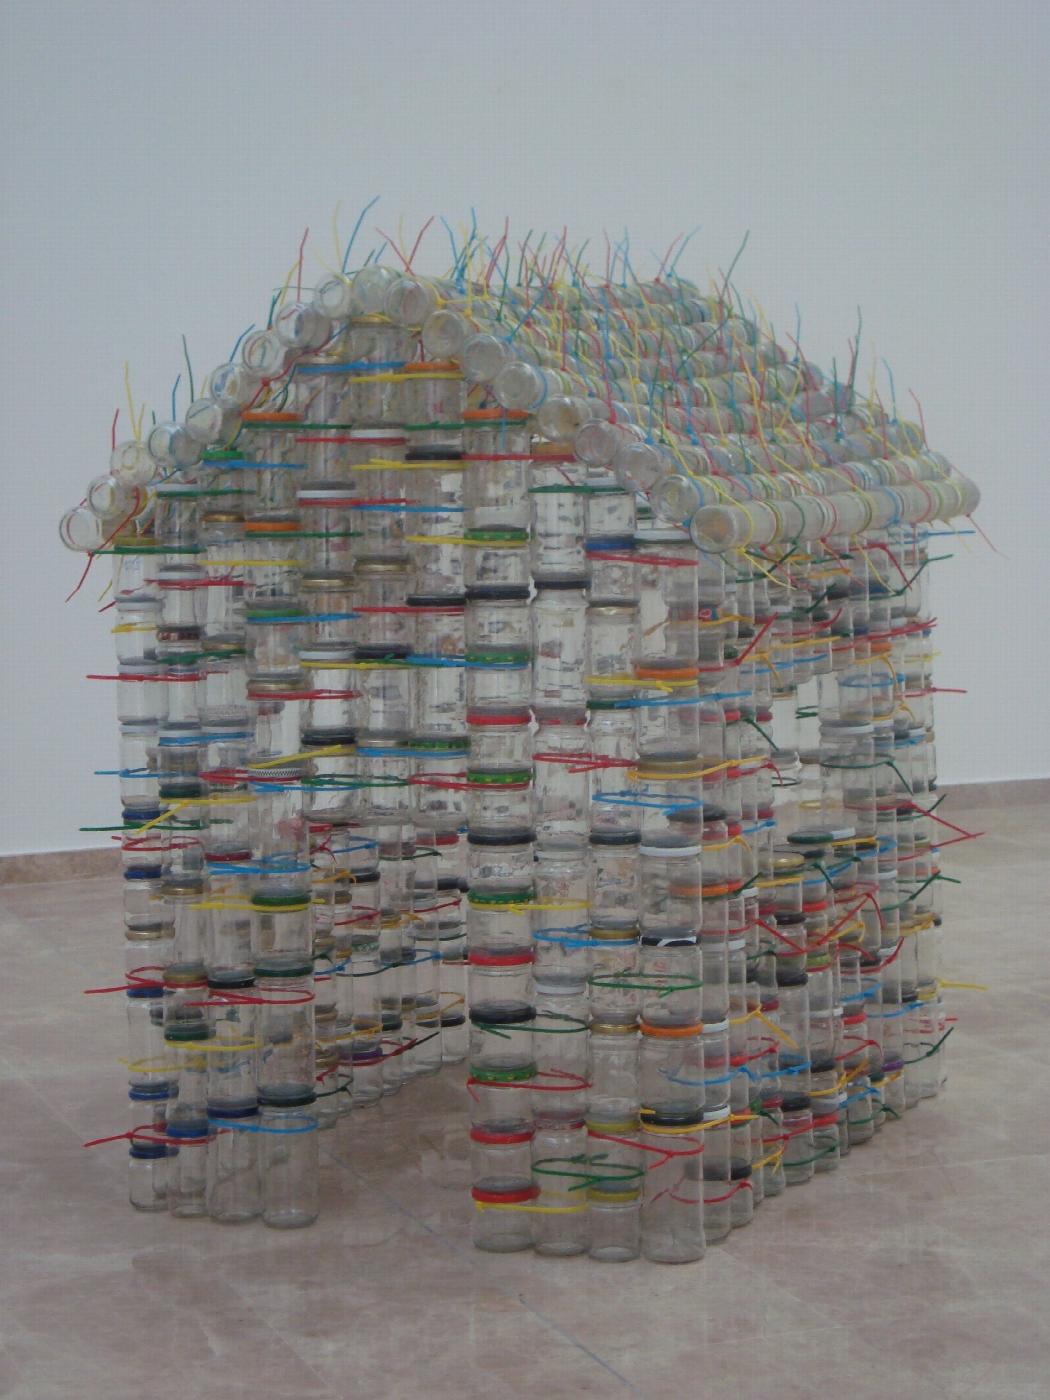 Escultura de Carmen Marcos (2009-2012) realizada con botes de vidrio reciclados que habla de las acrobacias familiares para llegar a fin de mes y pone en valor el reciclaje